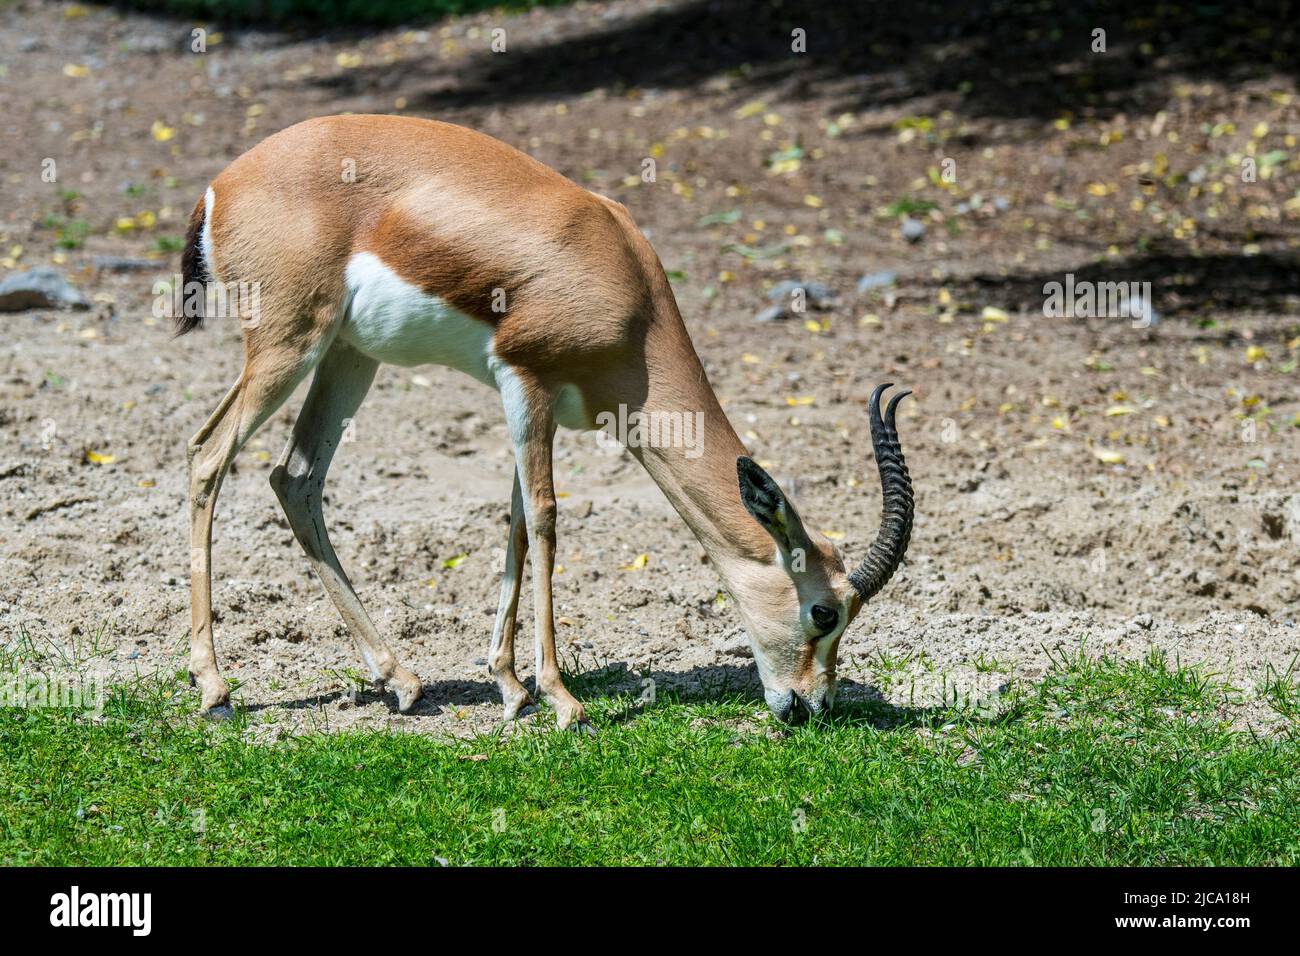 Dorcas gazelle / ariel gazelle (Gazella dorcas / Capra dorcas) pascolo erba, nativo di semidesert climi di Africa e Arabia Foto Stock